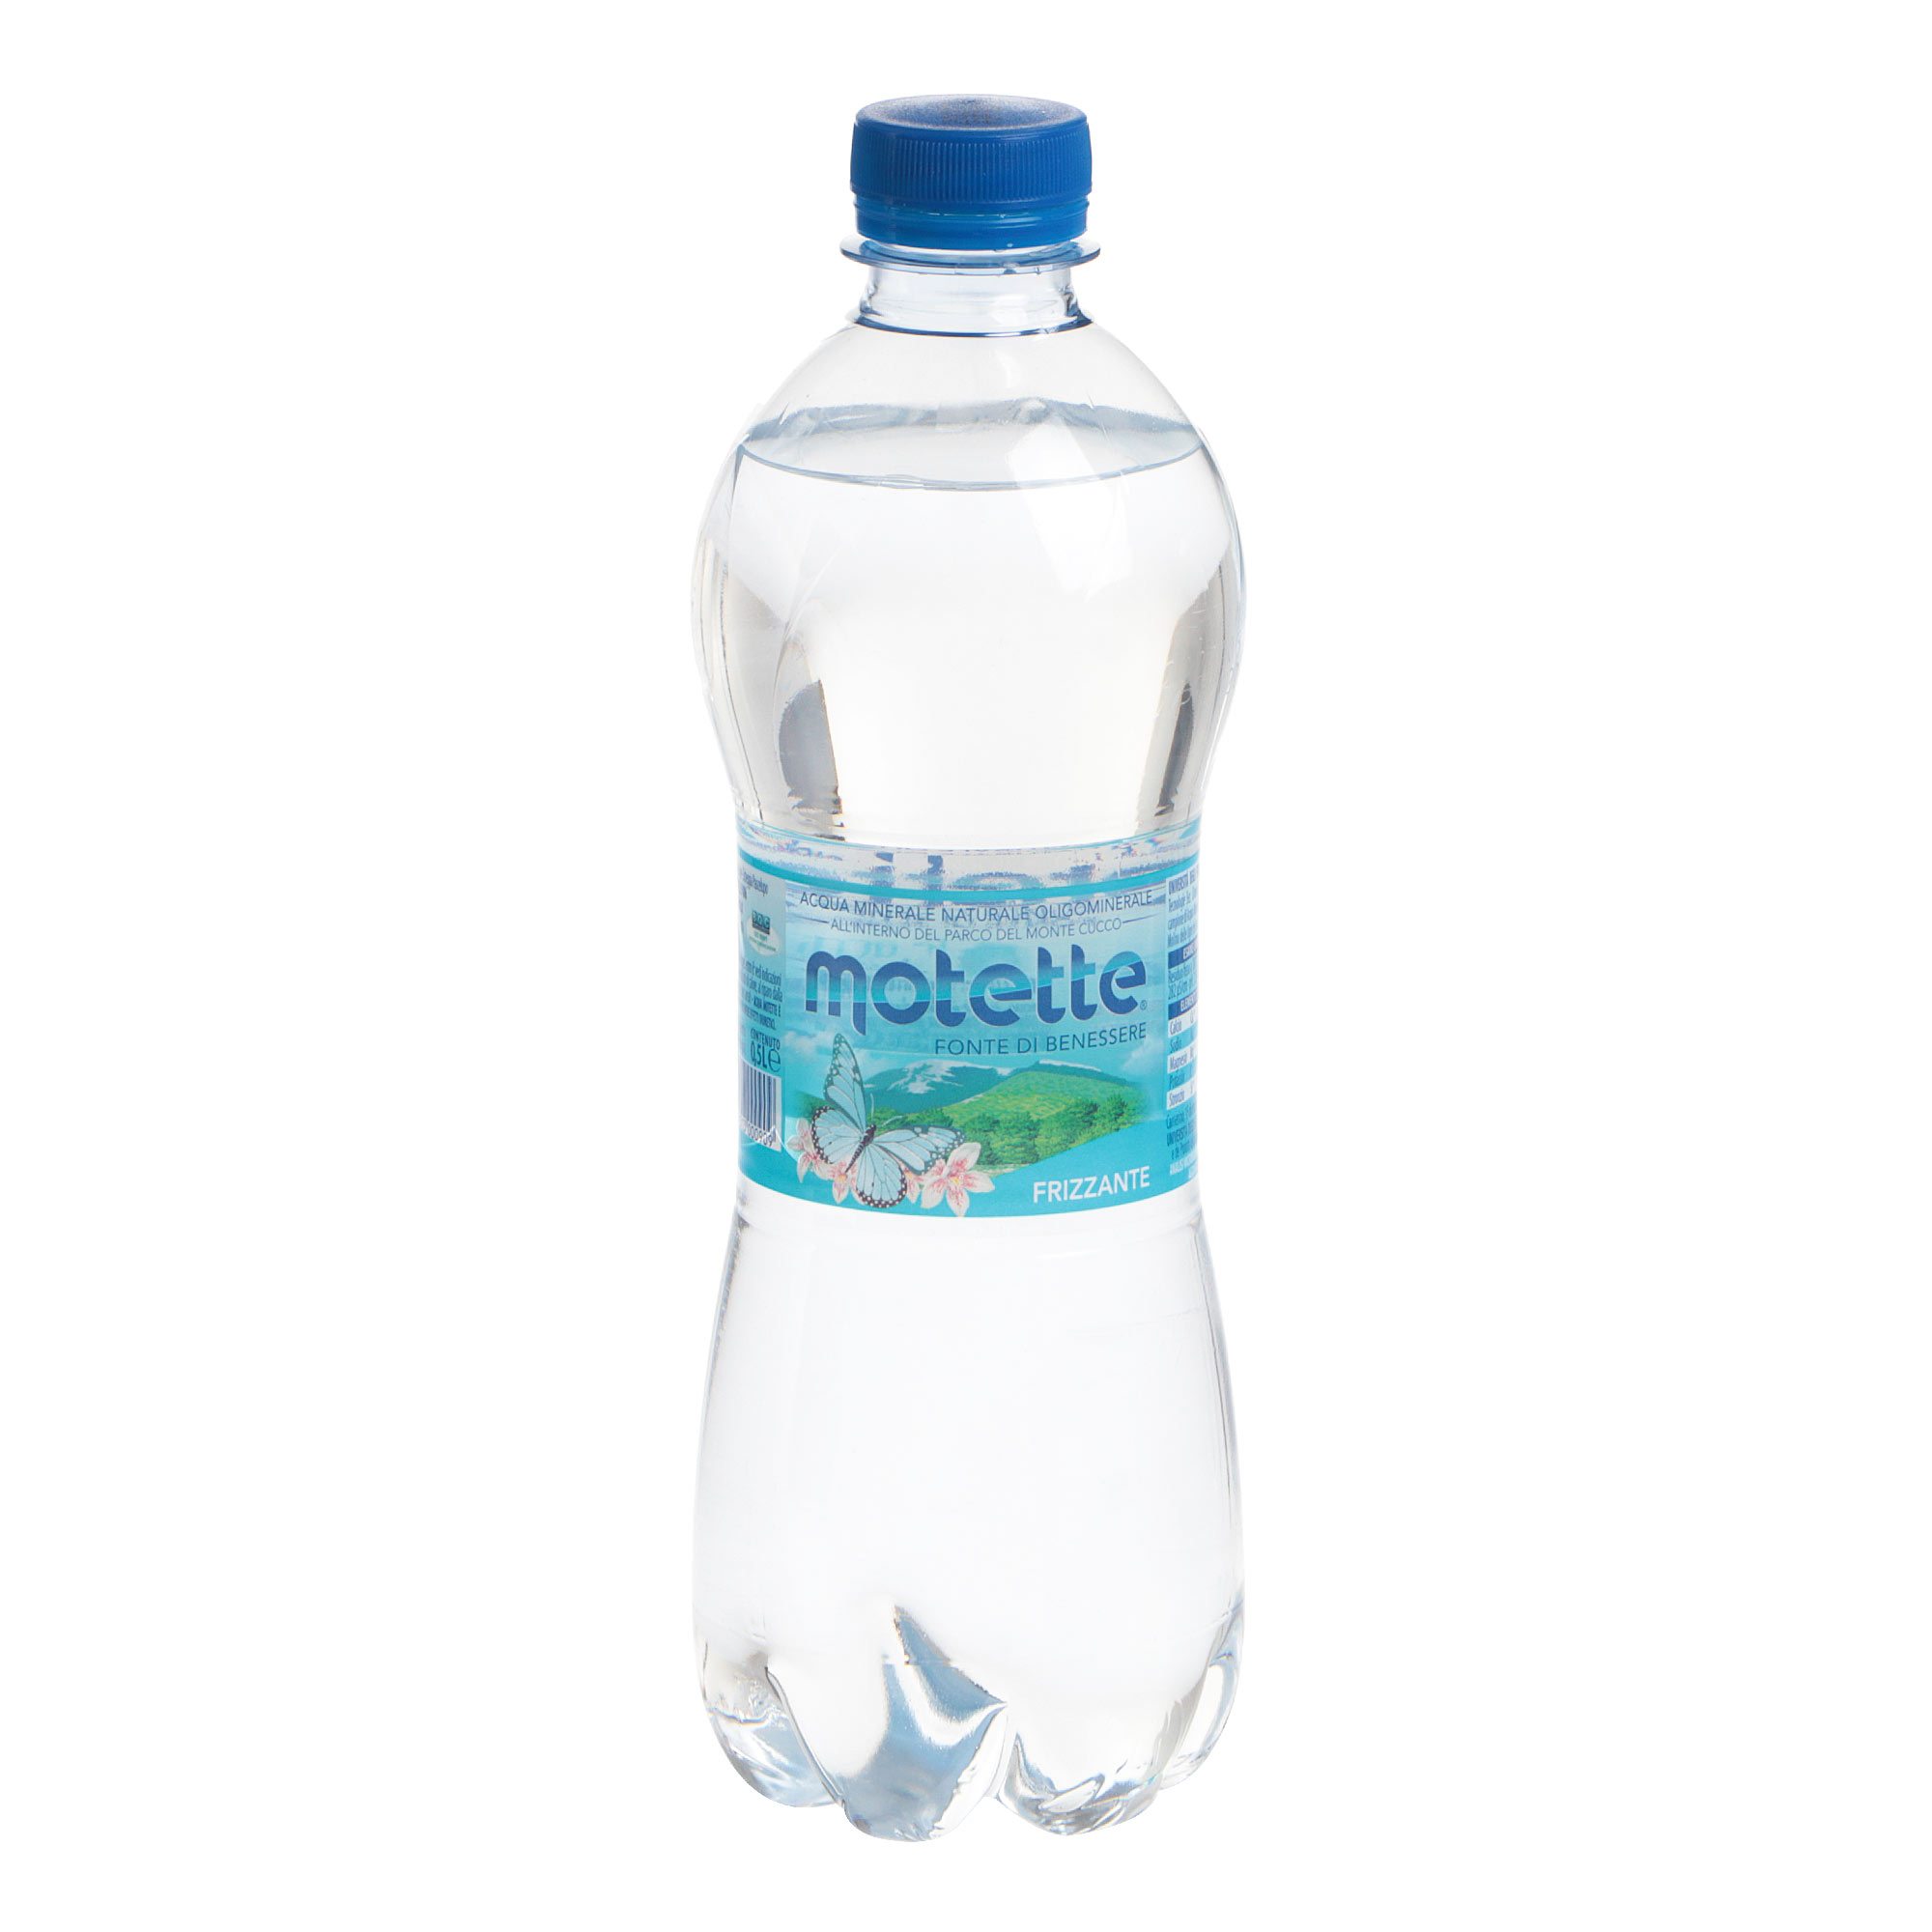 Вода Motette газированная, 0,5 л